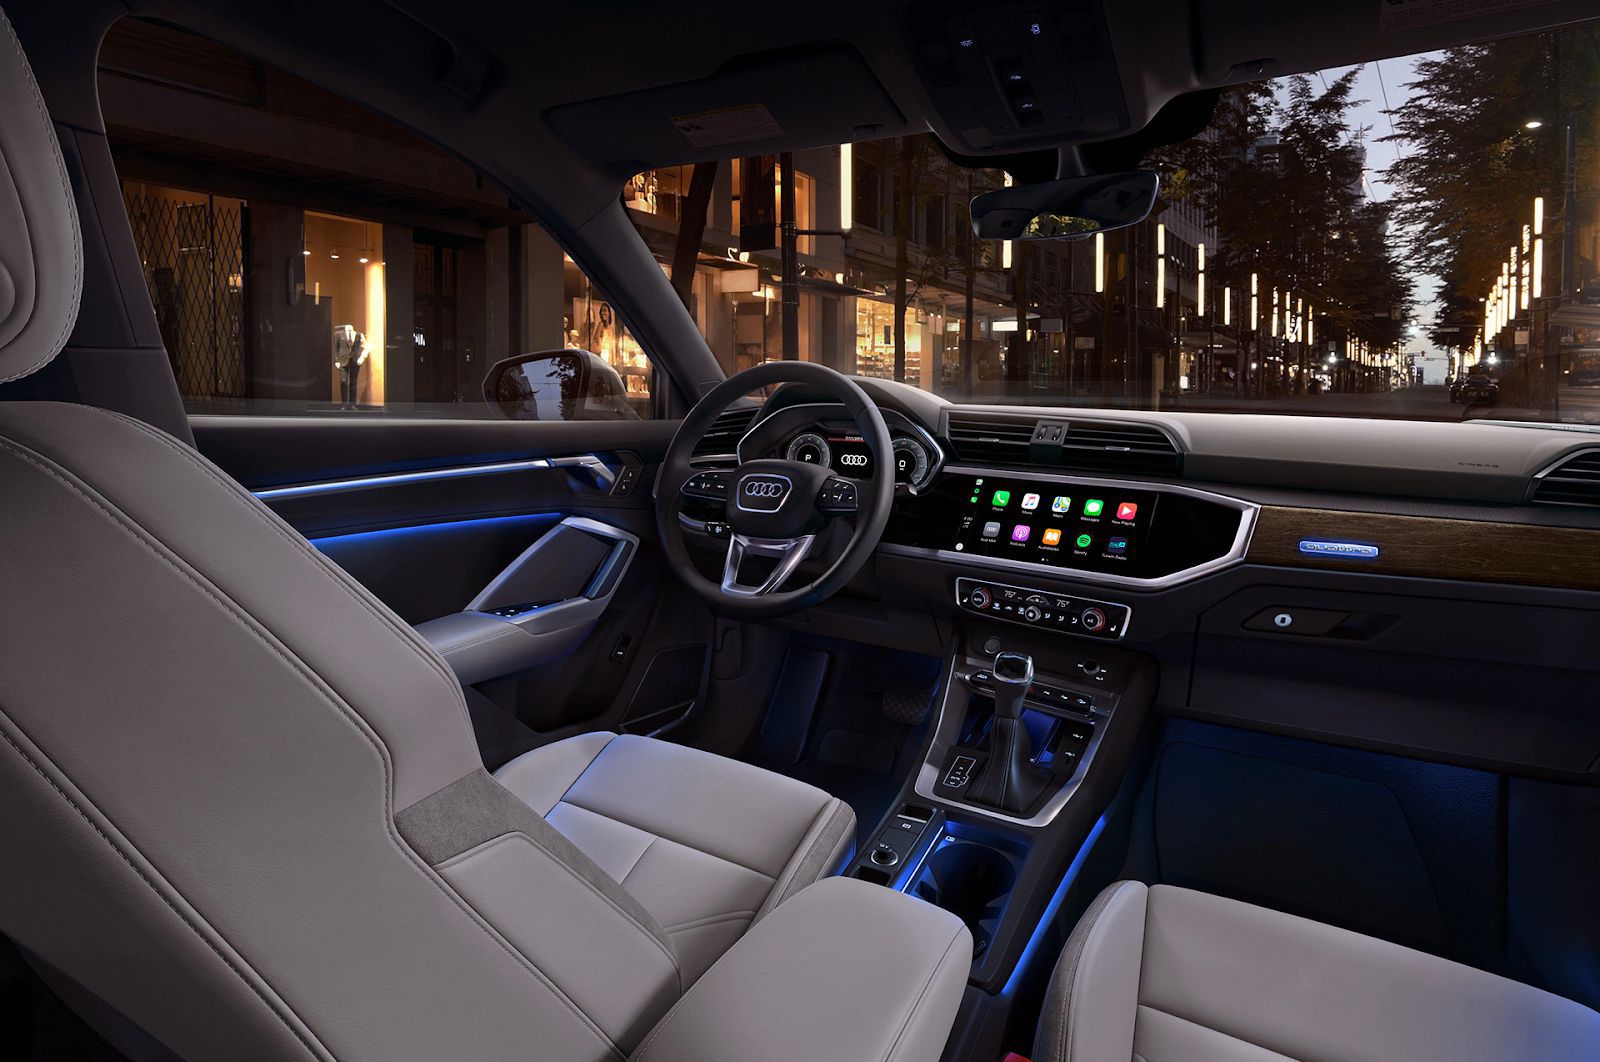 Khoang nội thất của Audi Q3 2023 thời thượng và đẳng cấp dành cho ông chủ với nhiều trang bị nổi bật